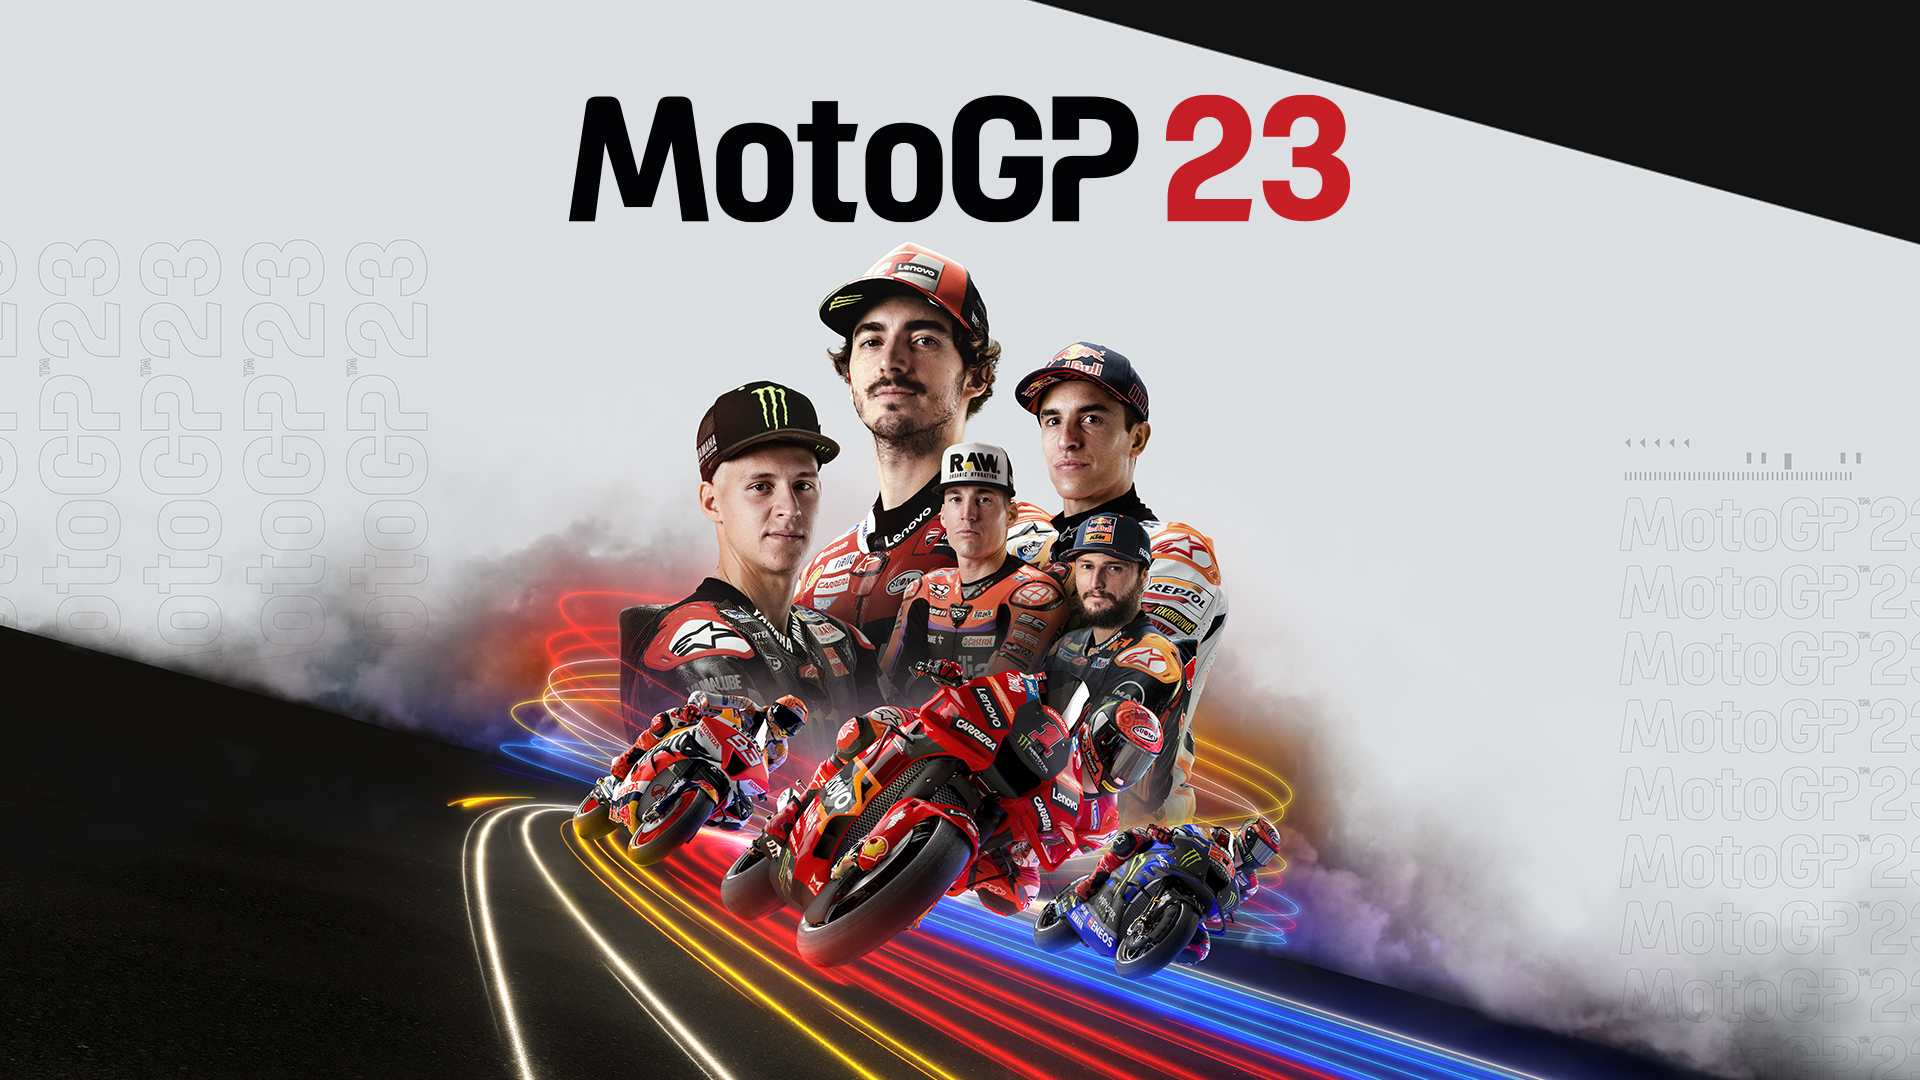 Milestone & Dorna Announce The Release Of MotoGP 23